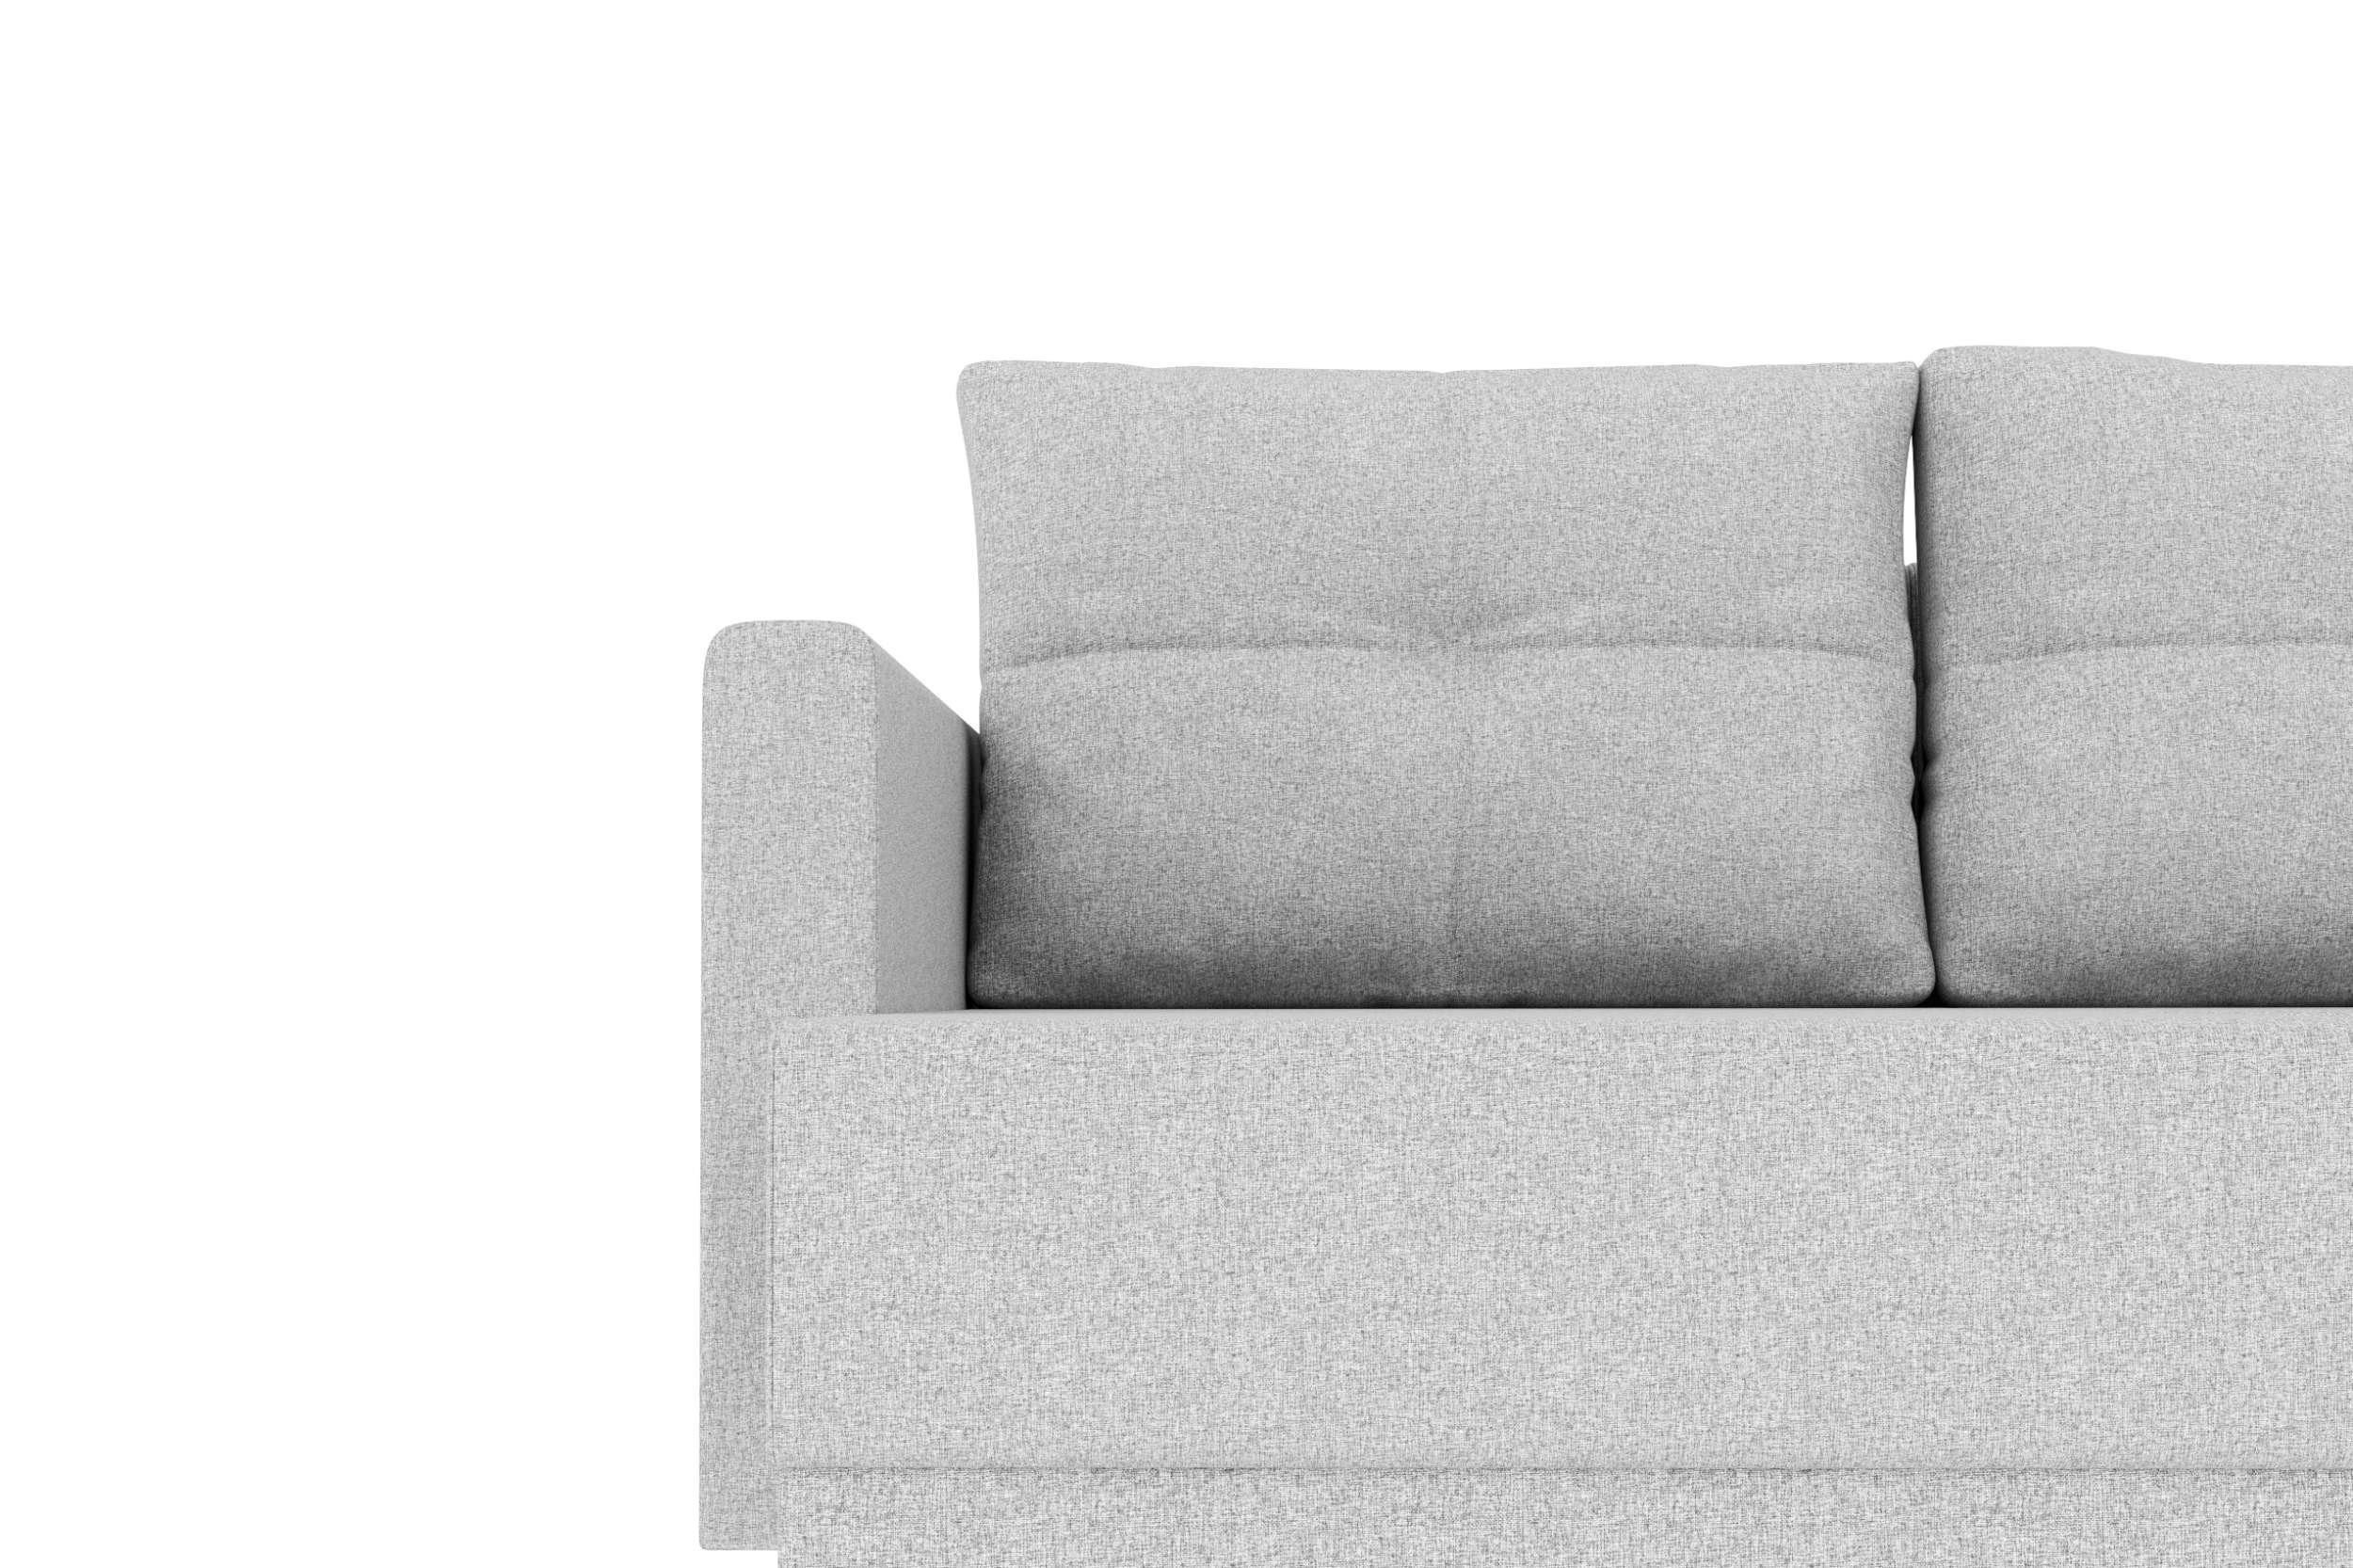 Design Bettfunktion, Eckcouch, Sofa, Selena, Modern mit Wohnlandschaft Sitzkomfort, Bettkasten, Stylefy mit U-Form,